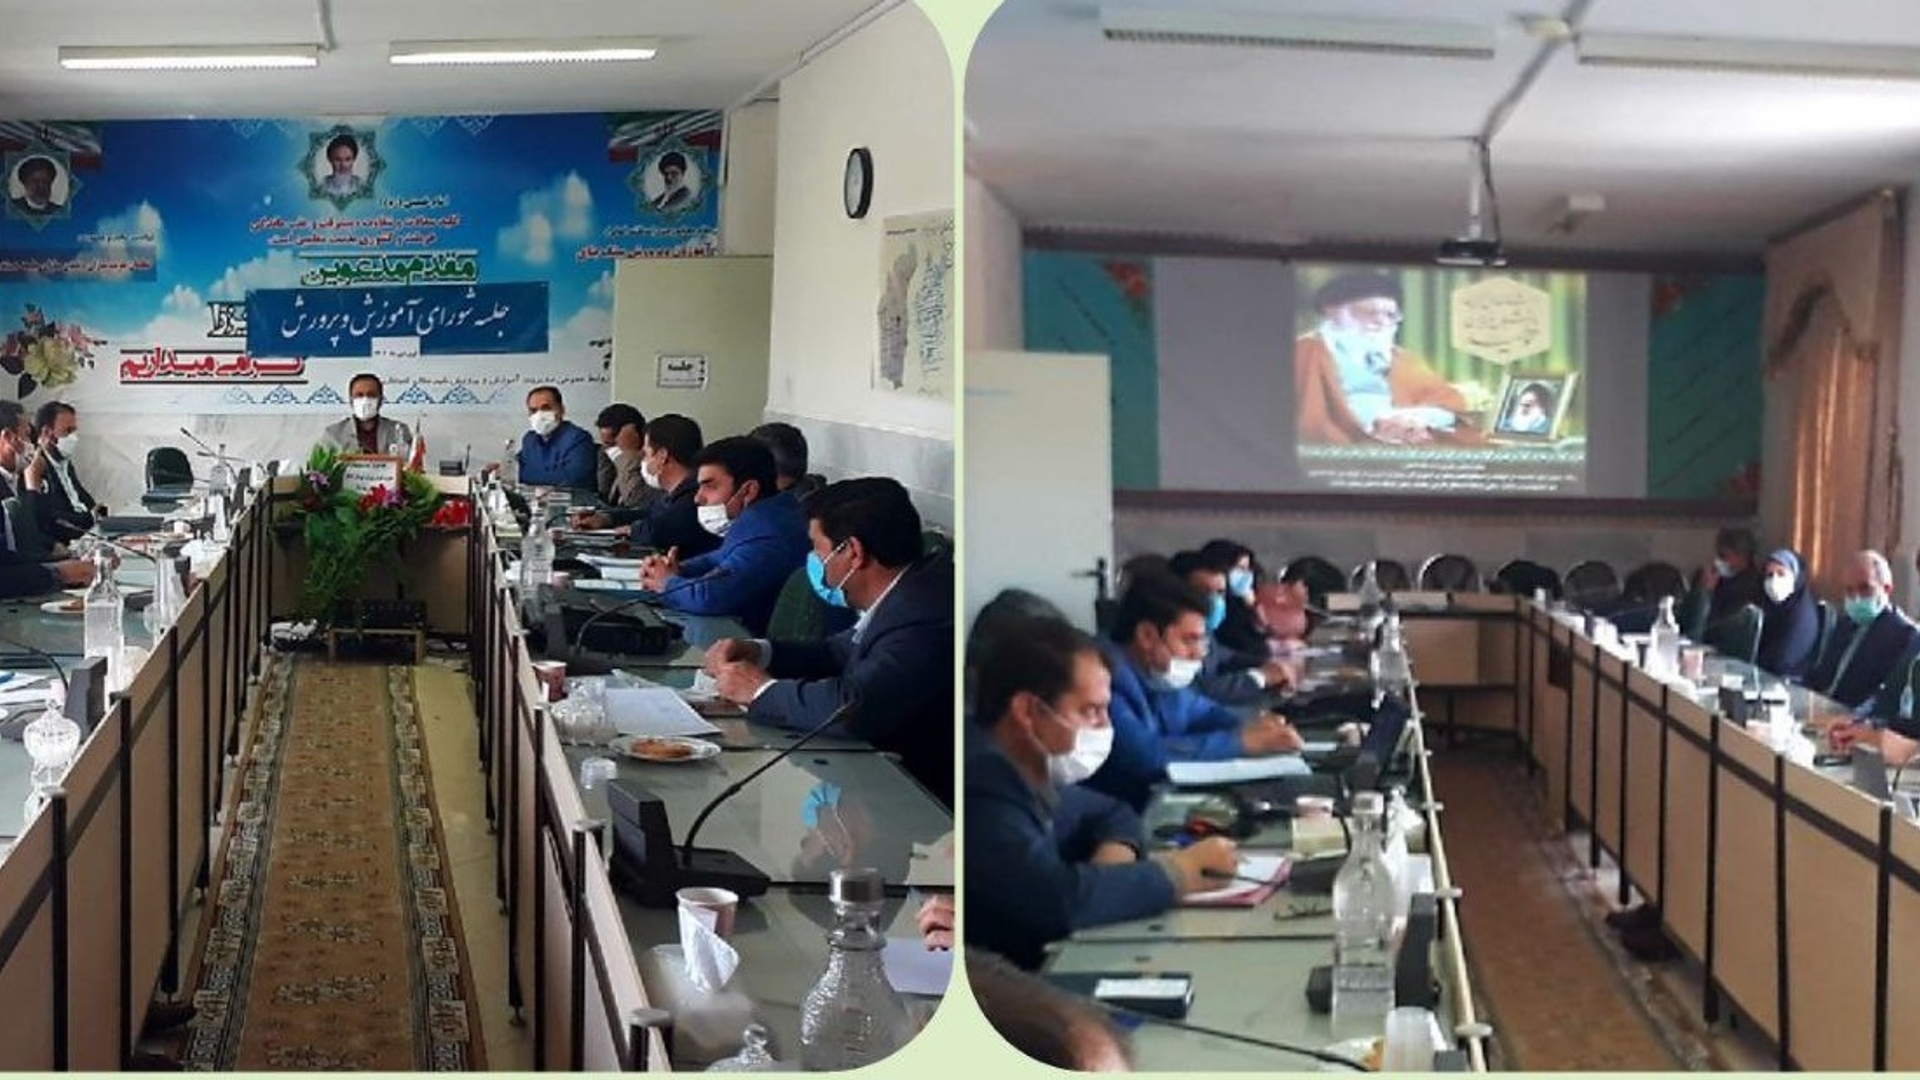 دویست وشصت وهفتمین جلسه شورای آموزش و پرورش شهرستان کمیجان برگزار شد.